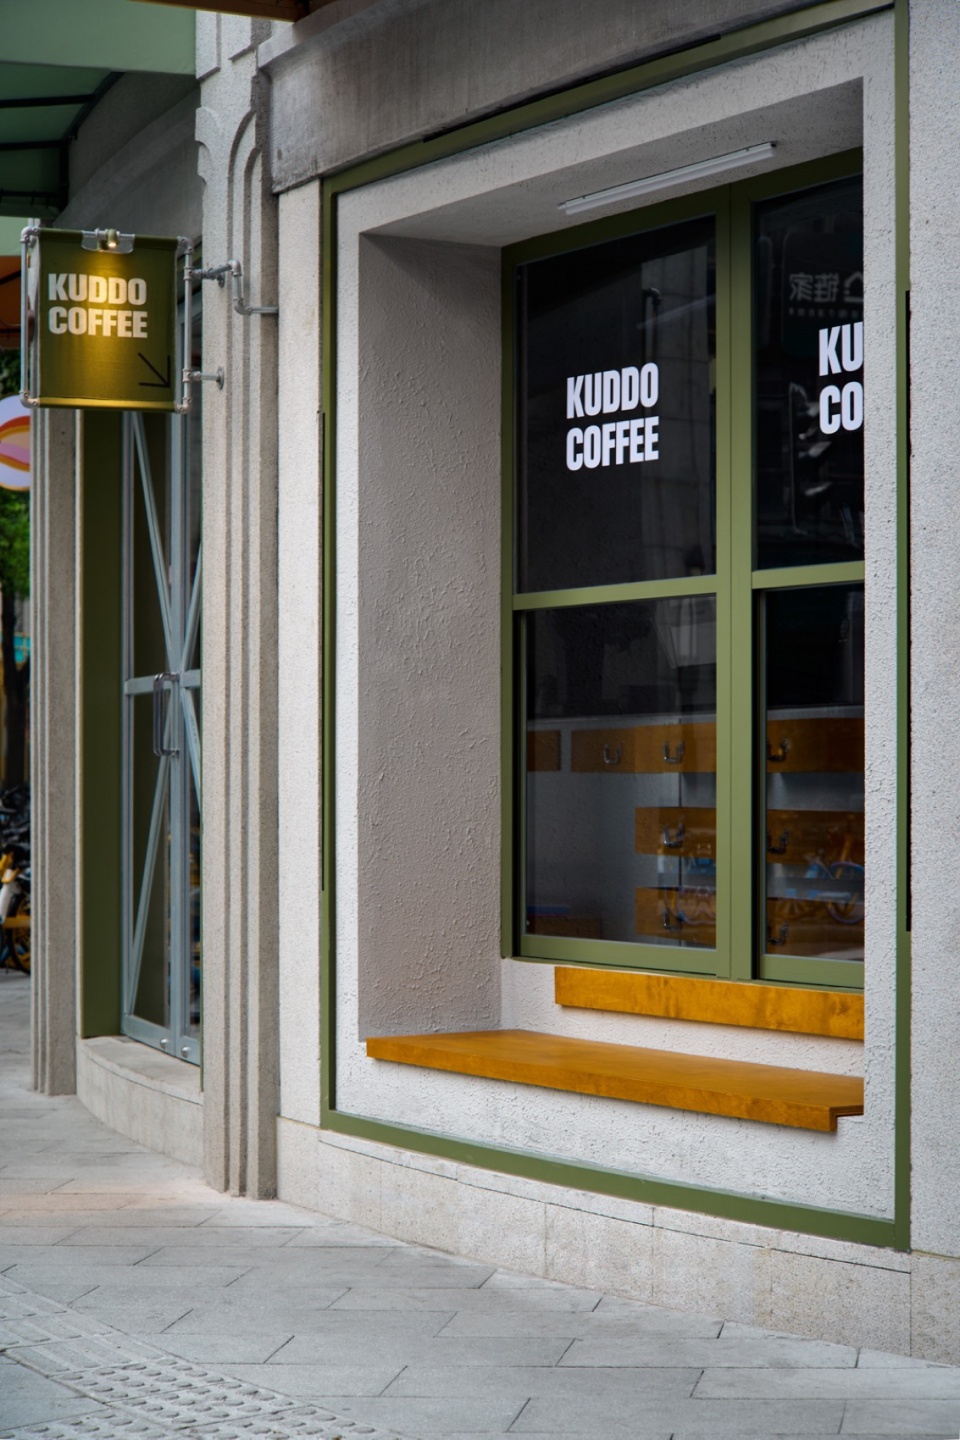 社区咖啡店设计,咖啡店设计,咖啡店设计案例,咖啡店设计方案,茶饮店设计,小咖啡店设计,KUDDO coffee,上海,KUDDO咖啡鸿寿坊店,叙室设计